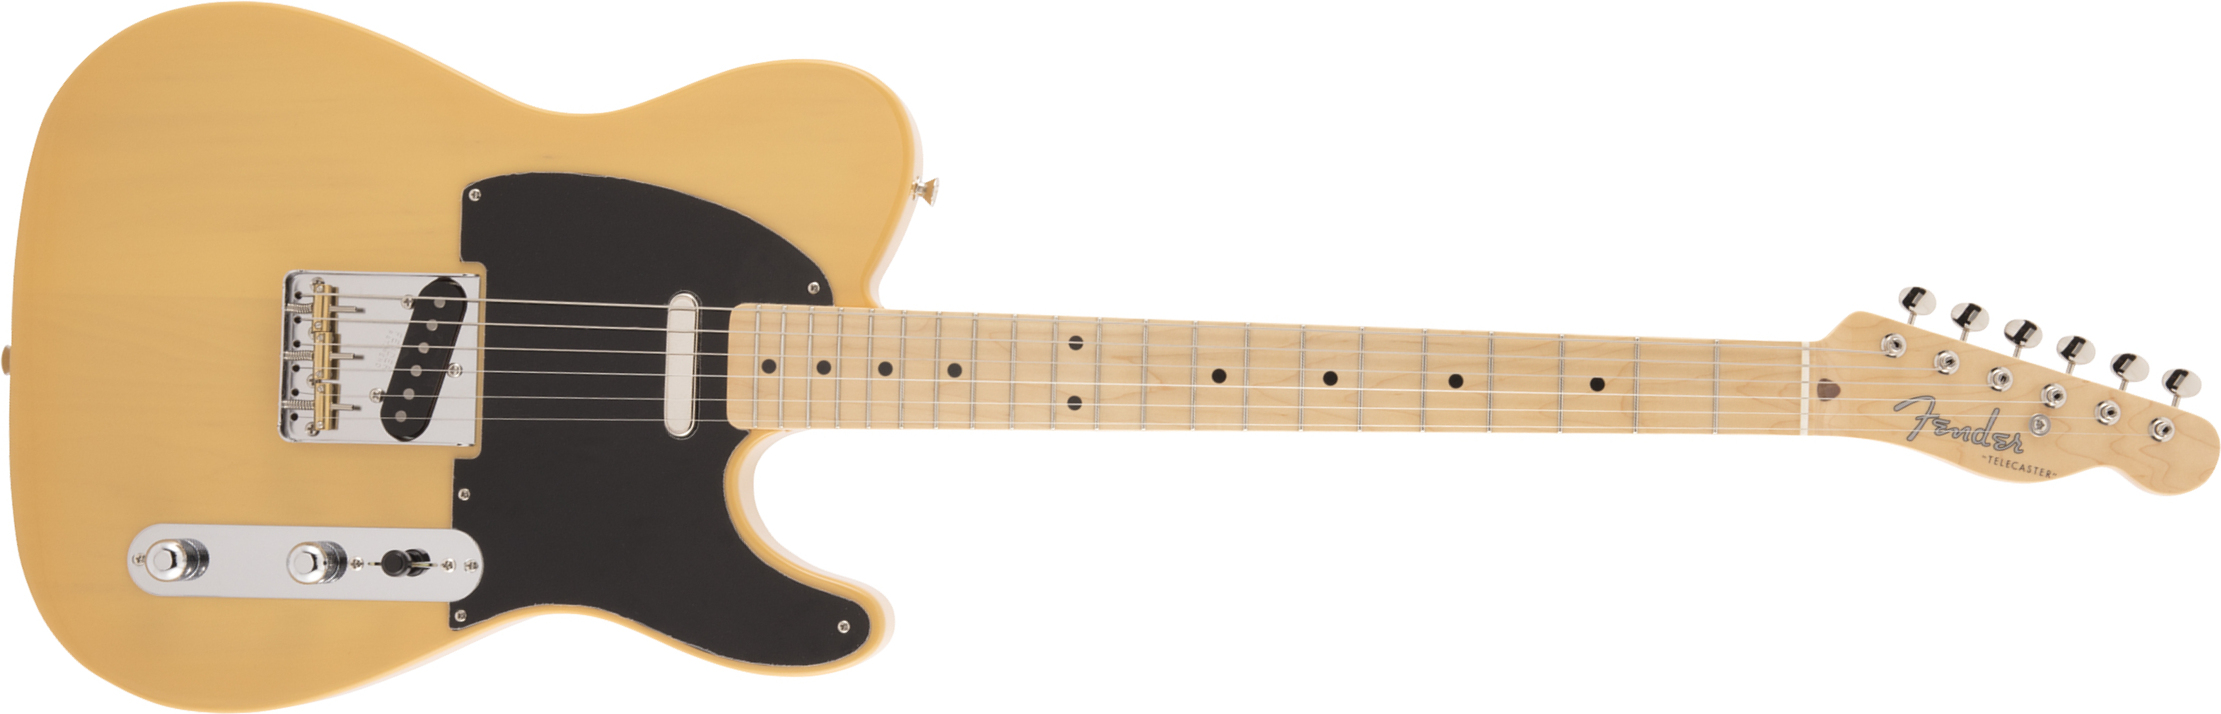 Fender Tele Traditional 50s Jap Mn - Butterscotch Blonde - Guitarra eléctrica con forma de tel - Main picture